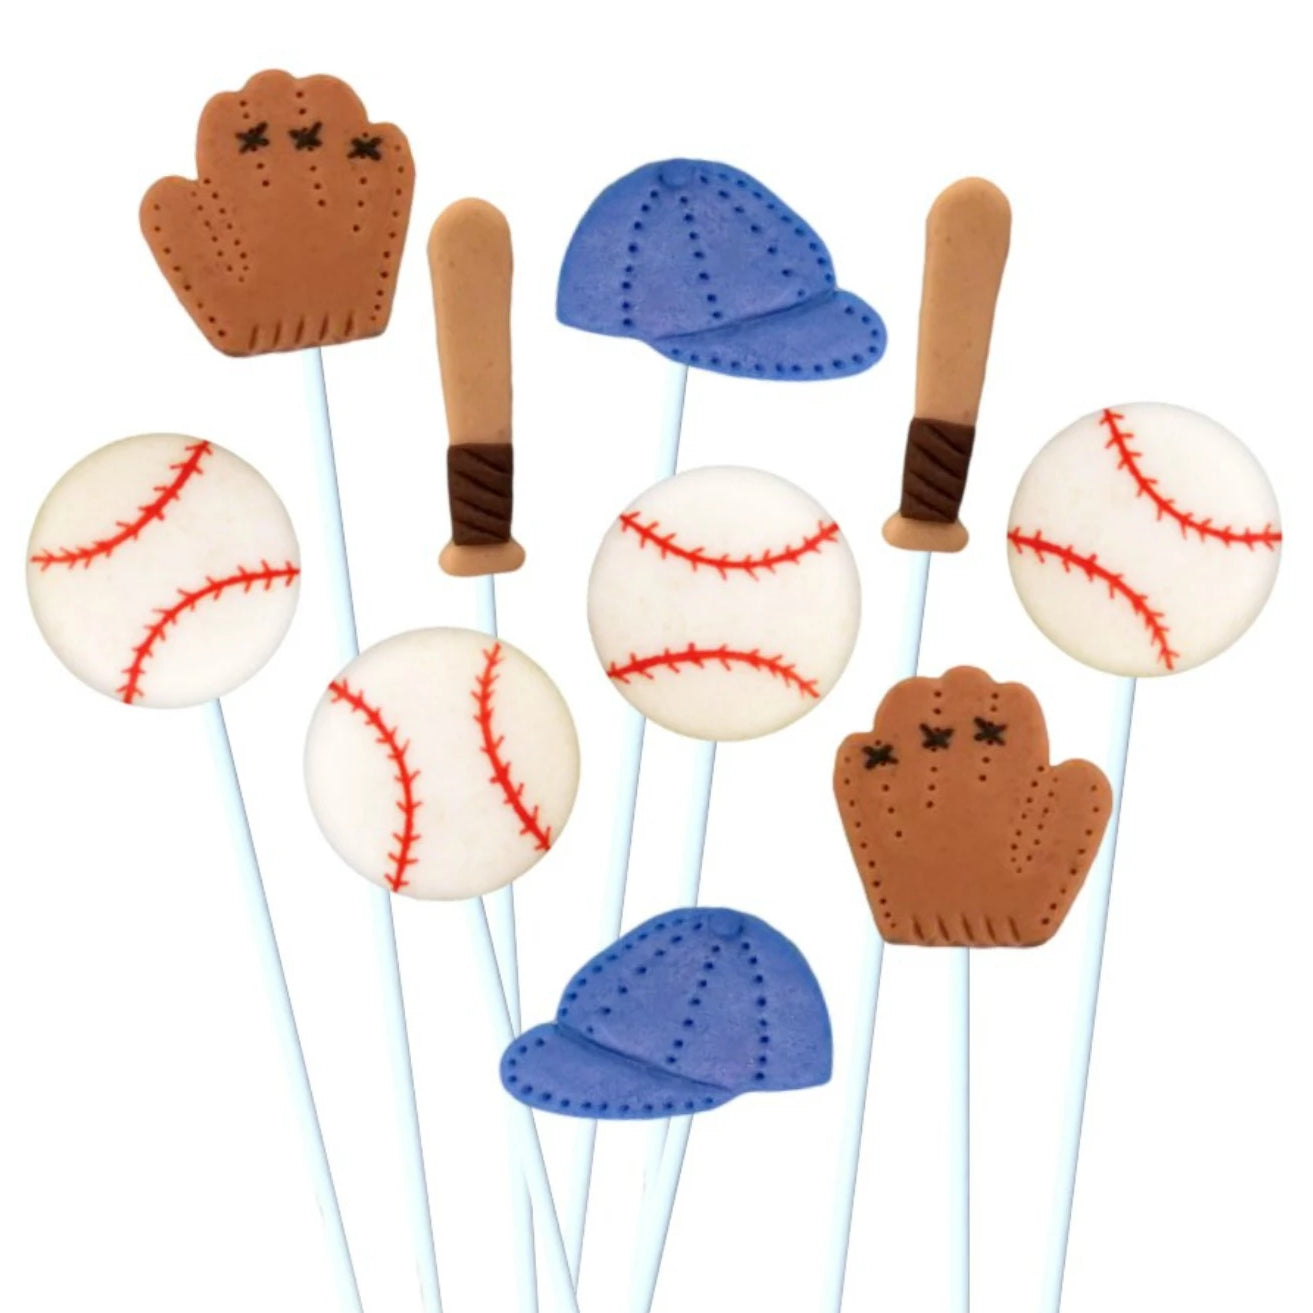 baseball cake pops ⚾️ #cakepops #funfetti #baseballcakepops #howto #bt... |  TikTok